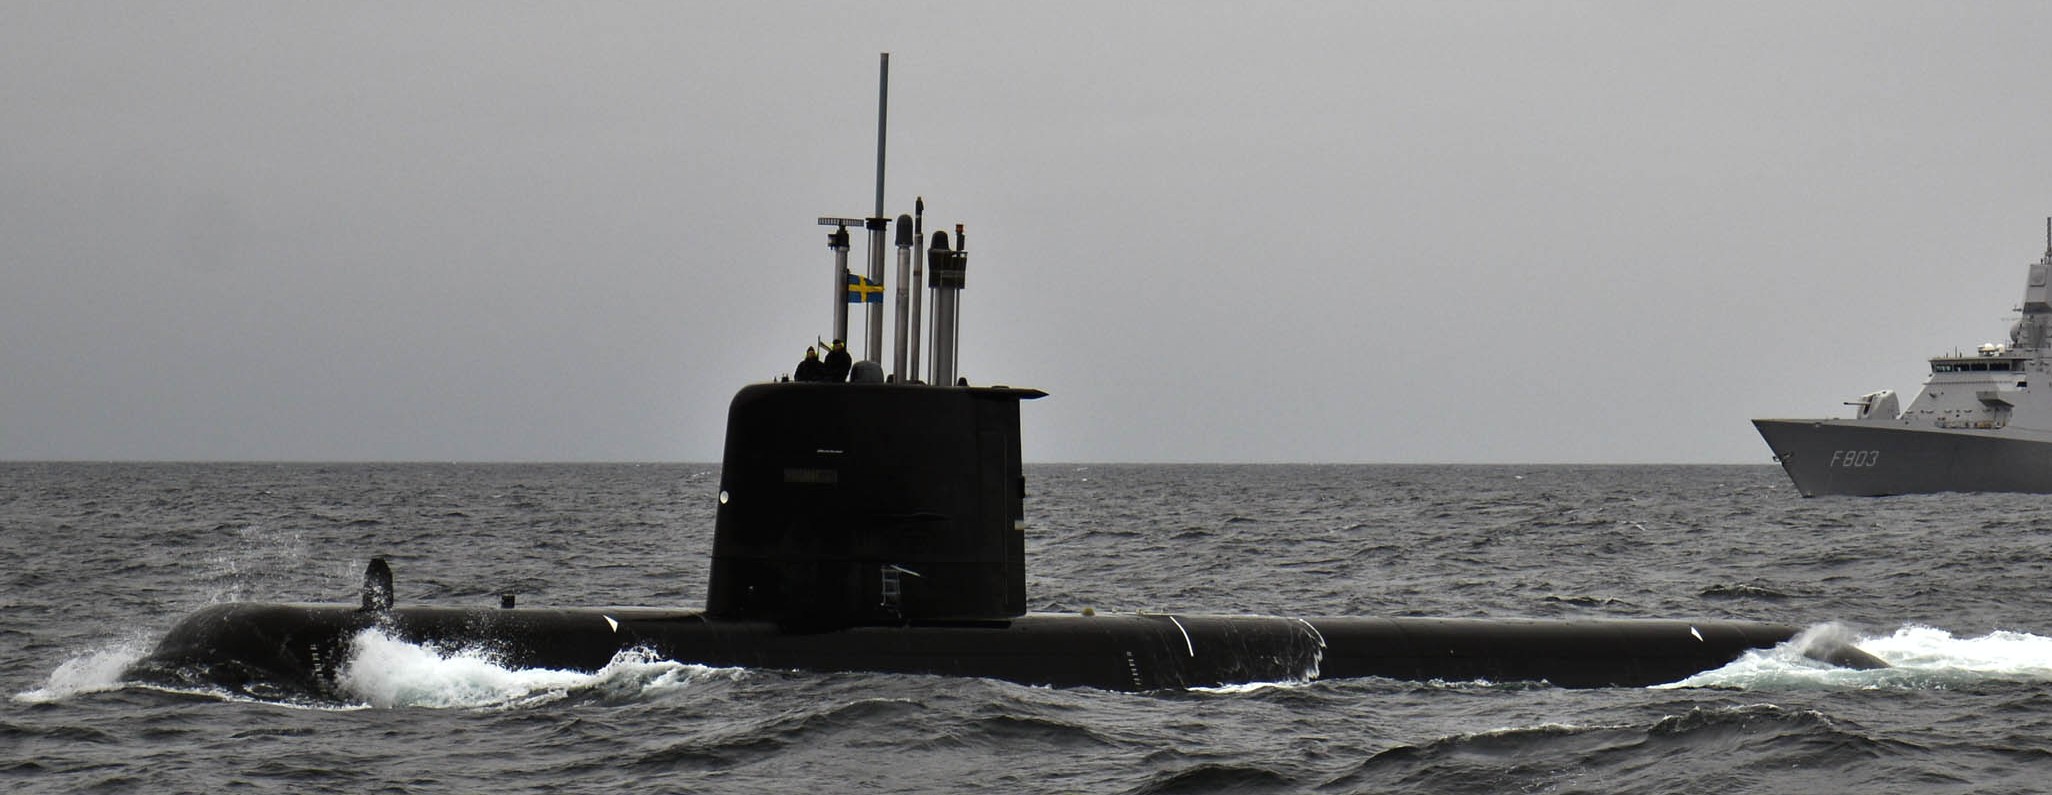 hswms hms gotland gtd class submarine ssk swedish navy svenska marinen försvarsmakten kockums 02